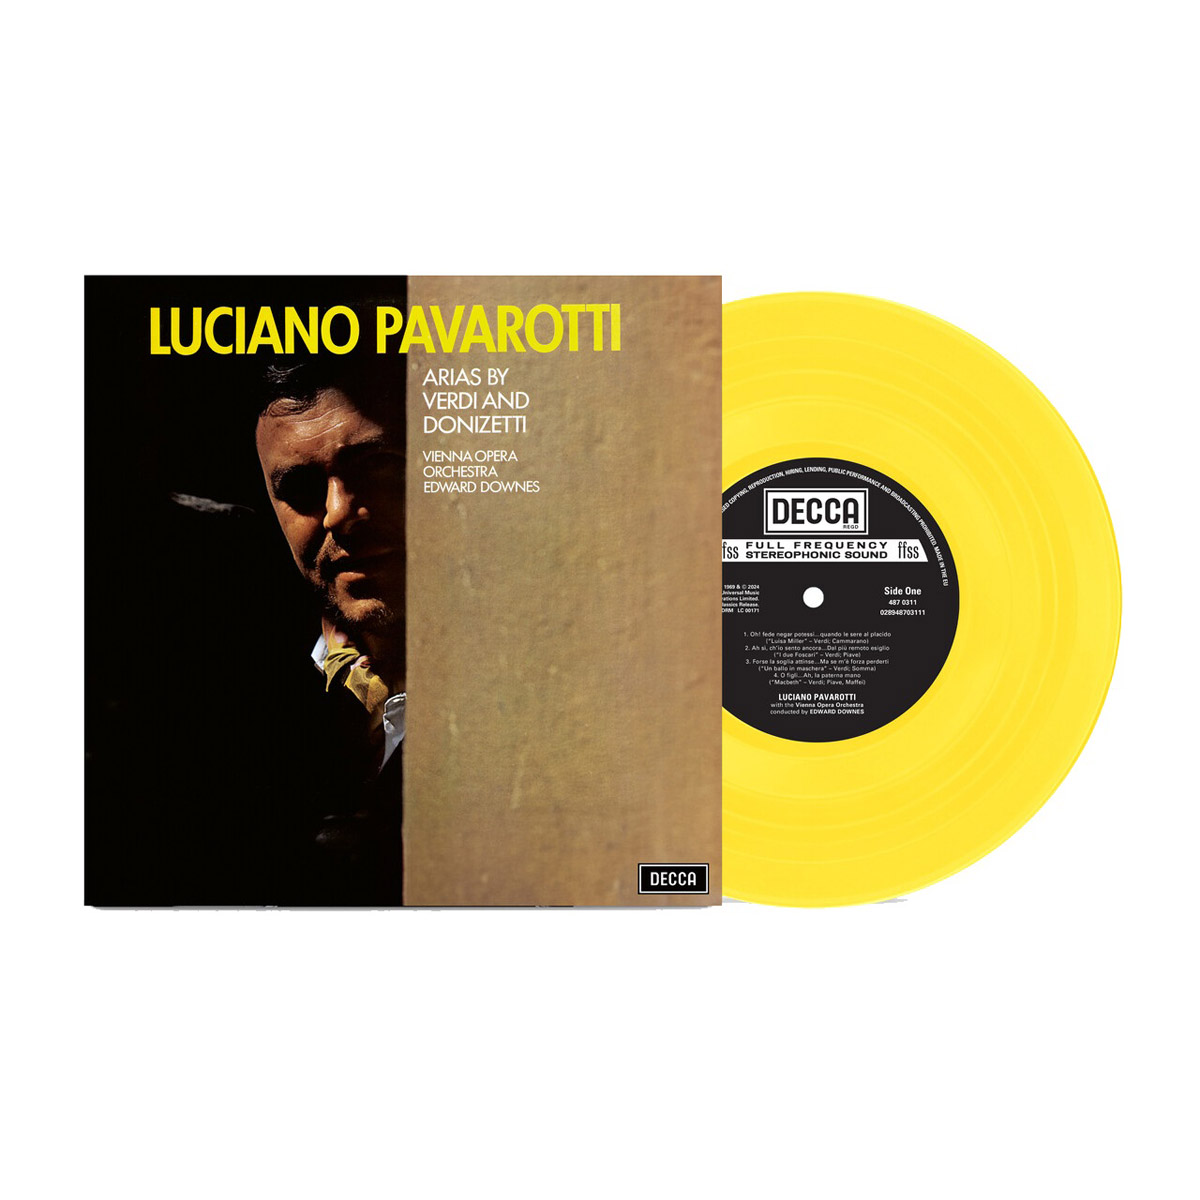 Luciano Pavarotti 루치아노 파바로티 걸작 리사이틀 - 베르디, 도니제티 아리아 (Arias By Verdi & Donizetti) [컬러 LP]